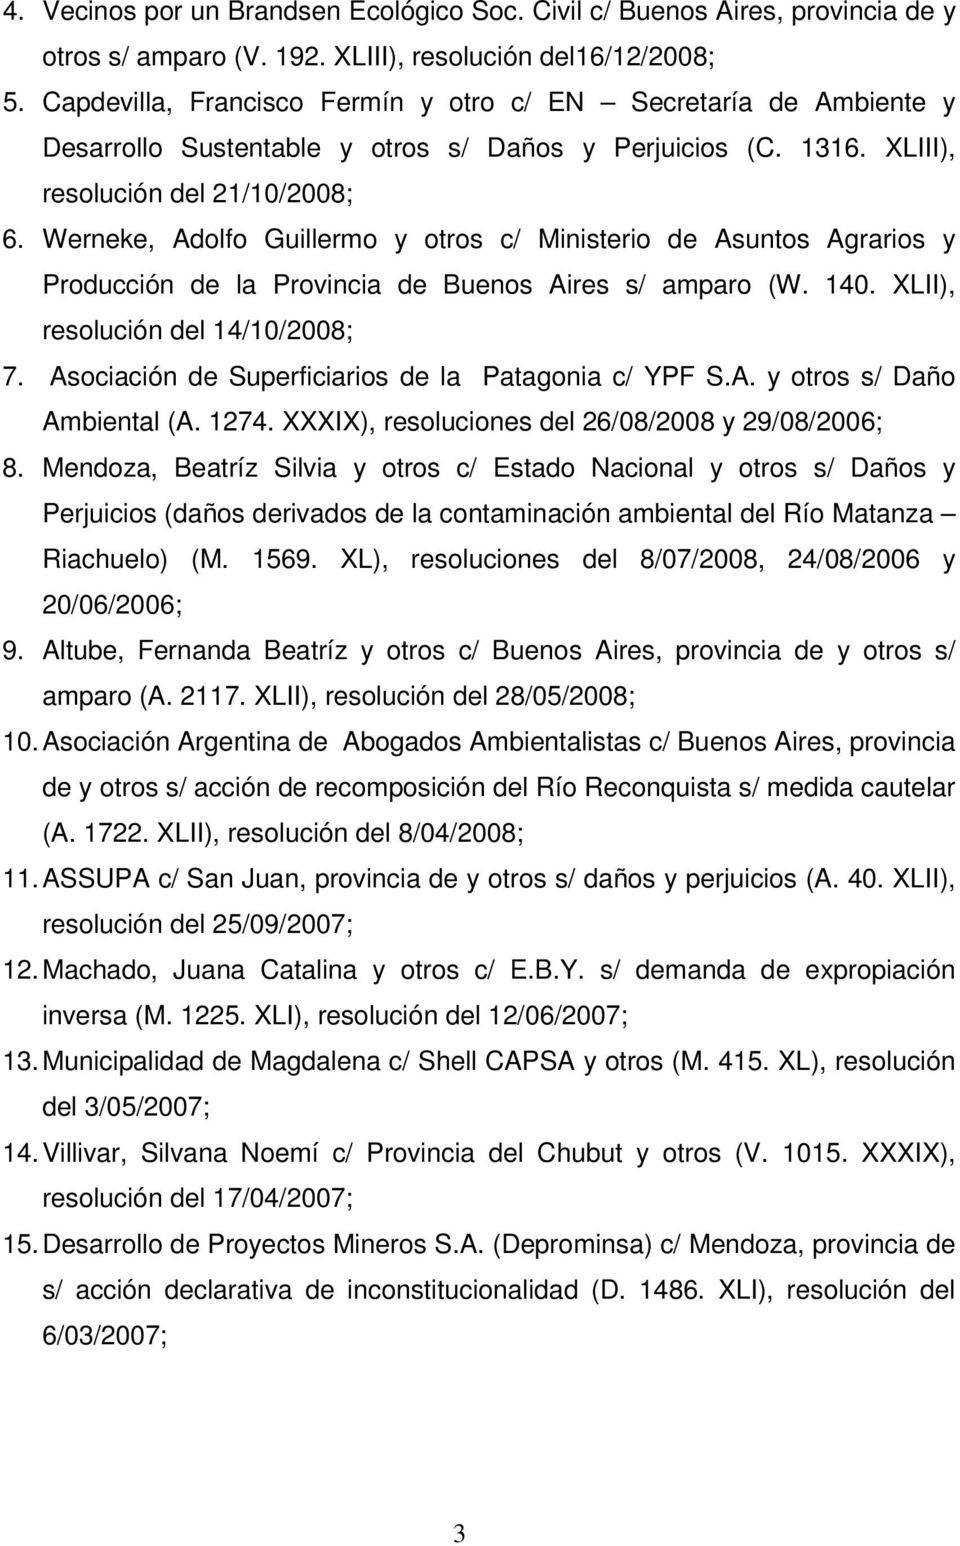 Werneke, Adolfo Guillermo y otros c/ Ministerio de Asuntos Agrarios y Producción de la Provincia de Buenos Aires s/ amparo (W. 140. XLII), resolución del 14/10/2008; 7.